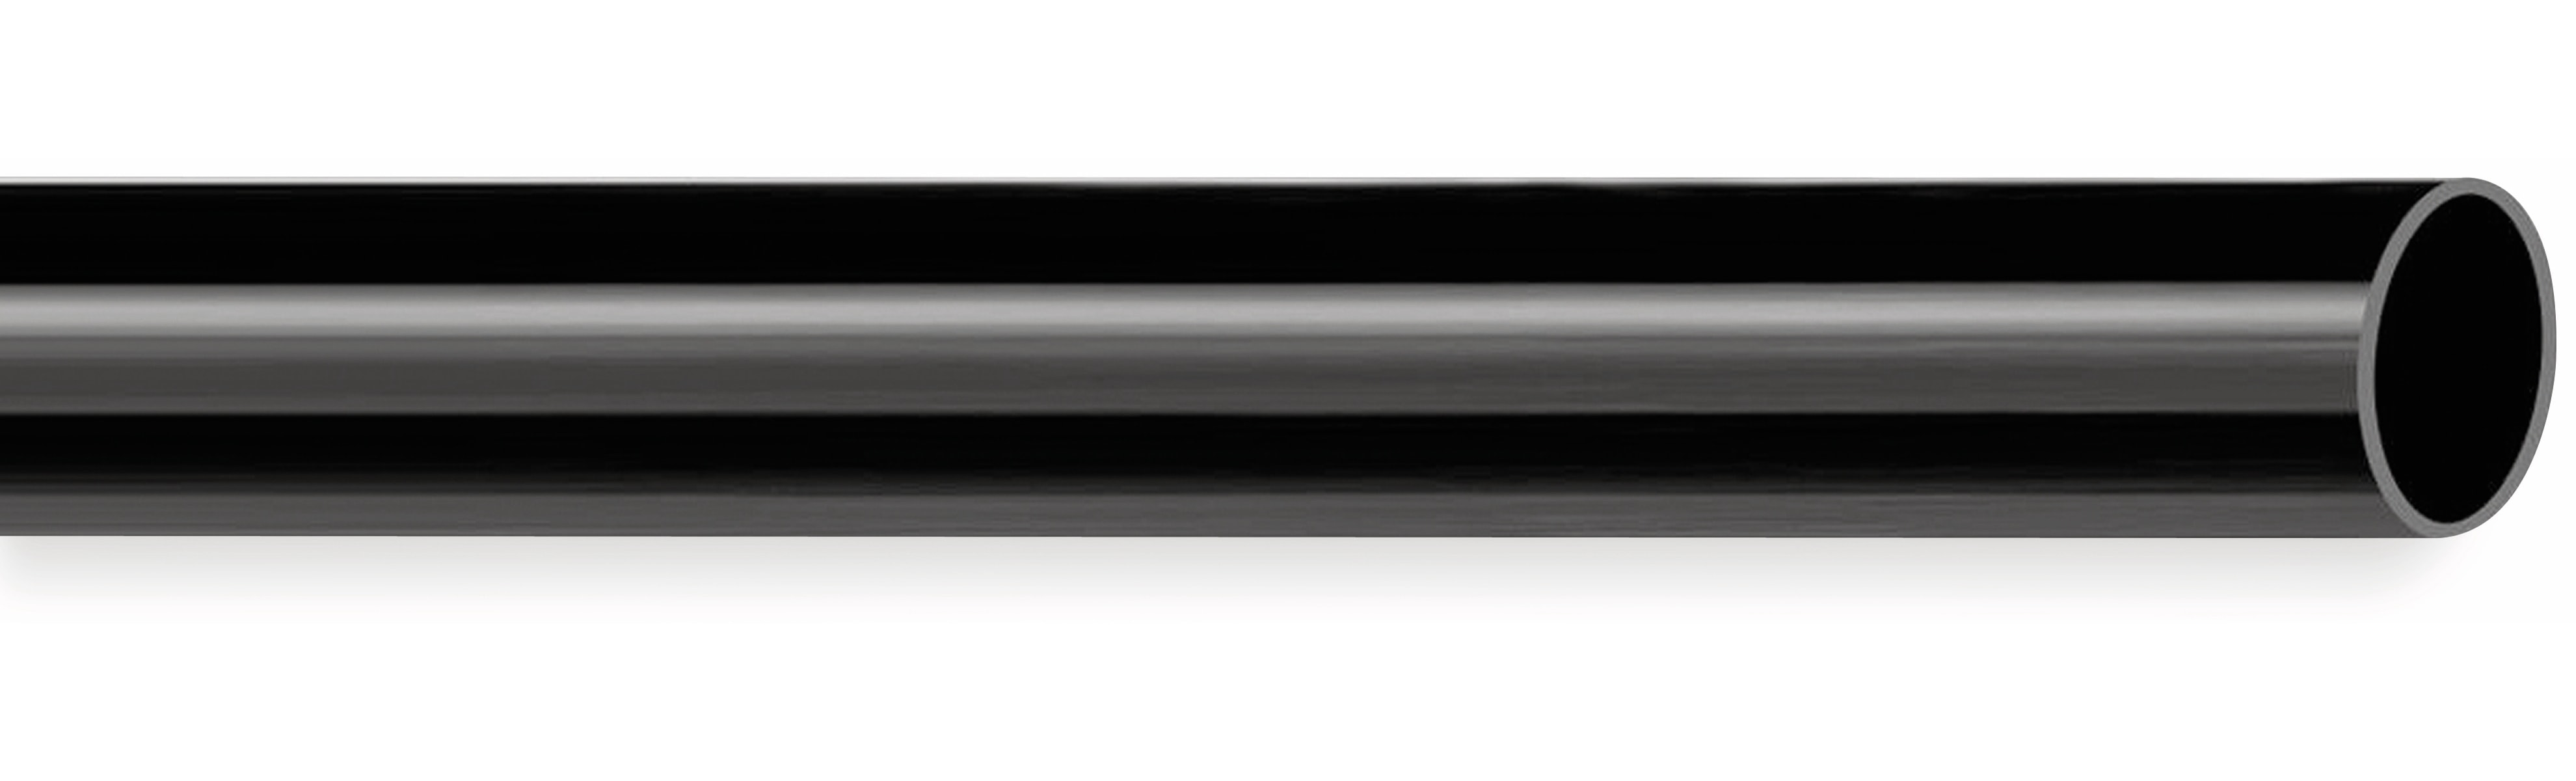 PVC Isolierschlauch 12x0,5 mm, schwarz, 10m